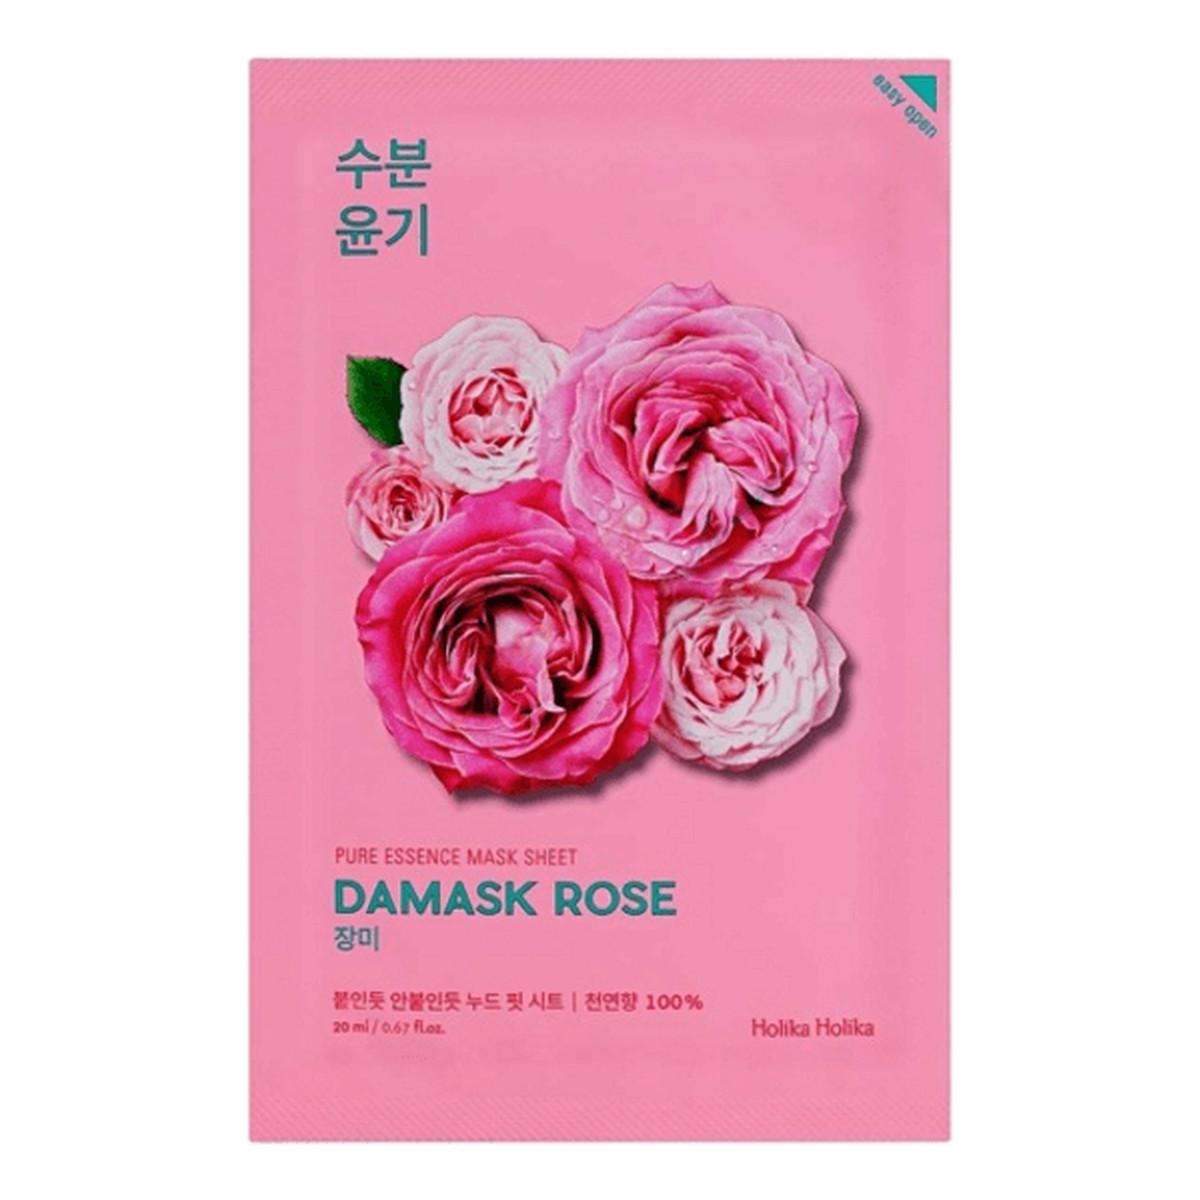 Holika Holika Pure Essence Mask Sheet Damask Rose, Maseczka do twarzy z ekstraktem z dzikiej róży nawilżająco - wygładzjąca 1 szt. 20ml